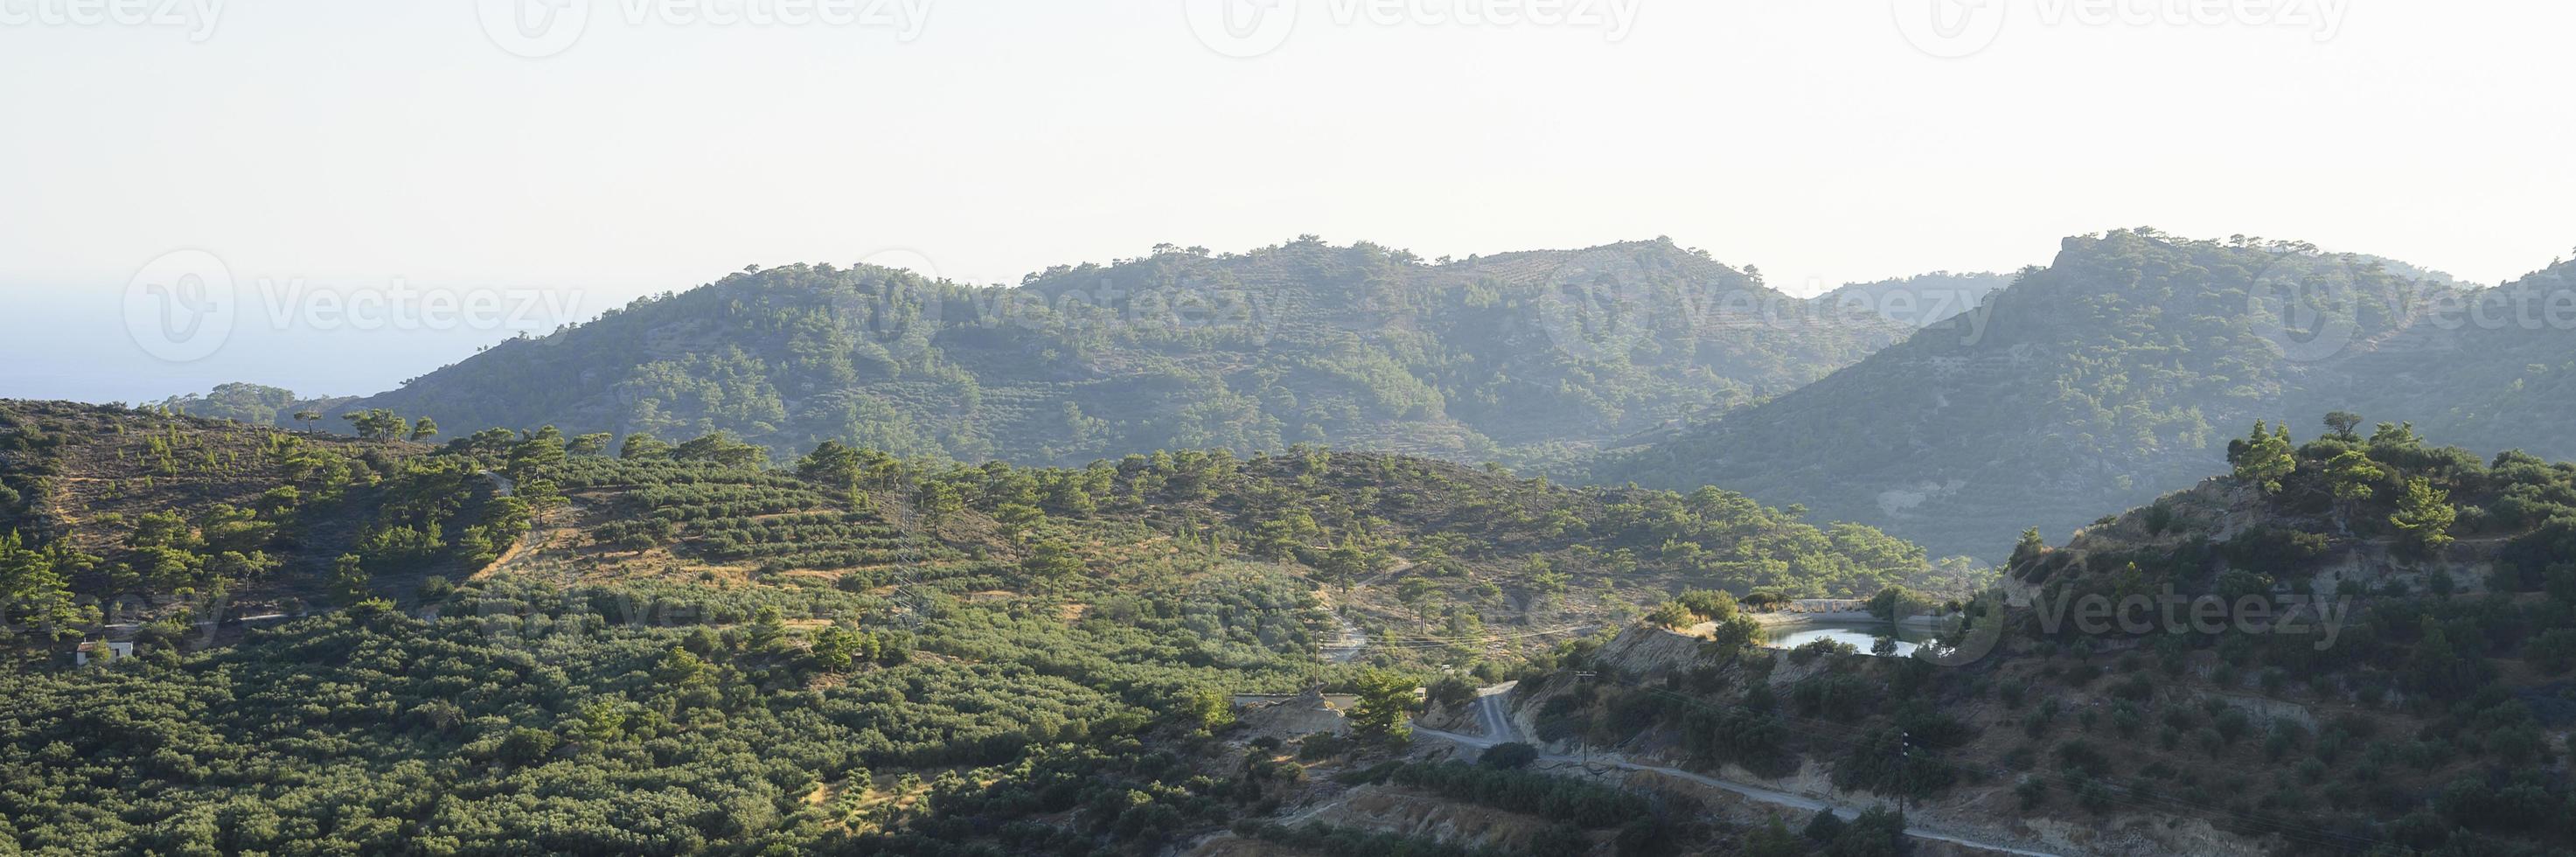 paisaje de una zona montañosa con plantaciones de olivos foto